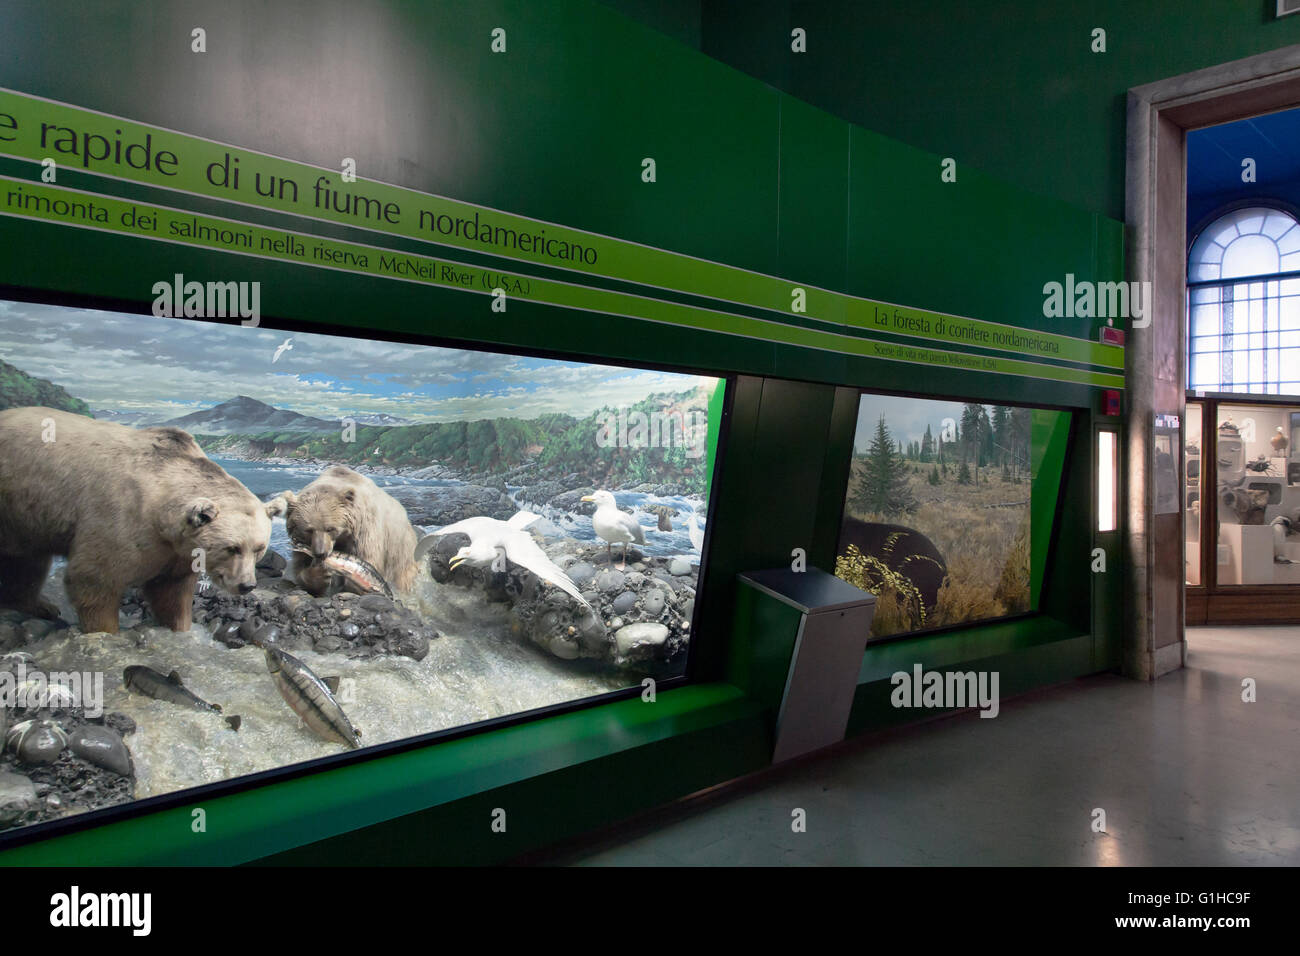 Naturmuseum Geschichte, ausgestopfte Tiere in Vitrinen: Bären entlang eines Flusses Jagd auf Lachse Stockfoto